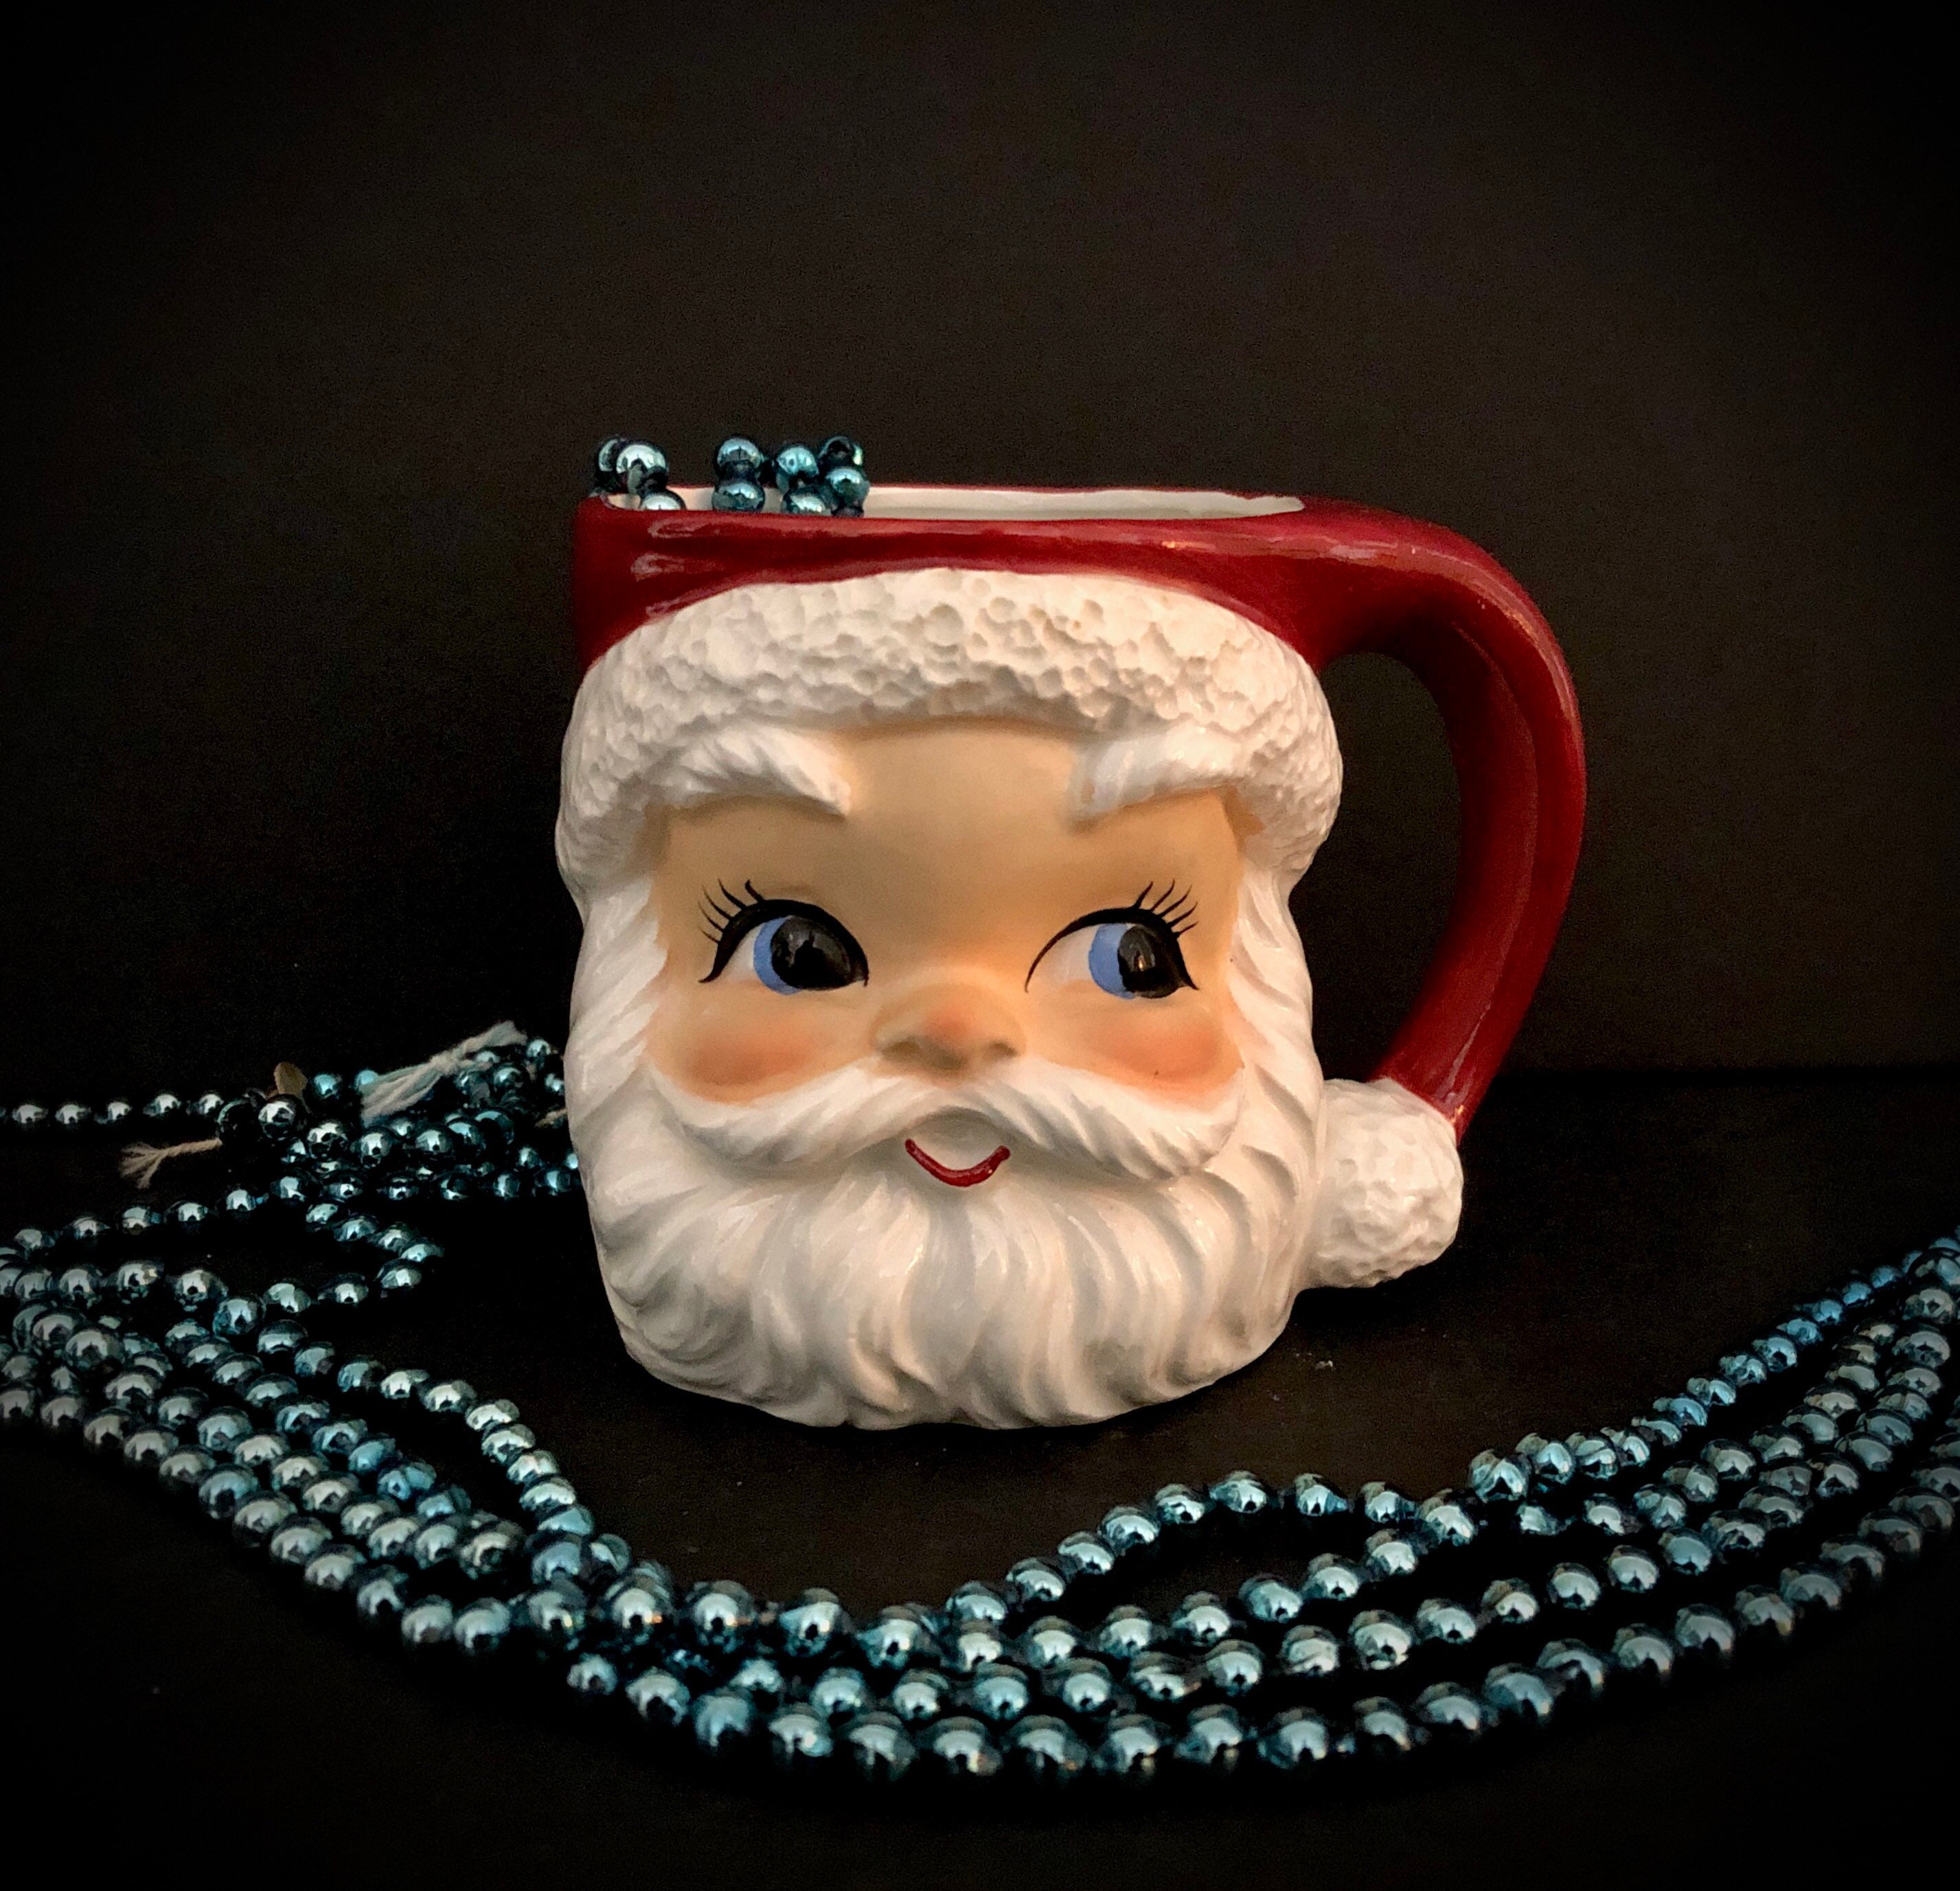 Vintage Santa Ceramic Cup